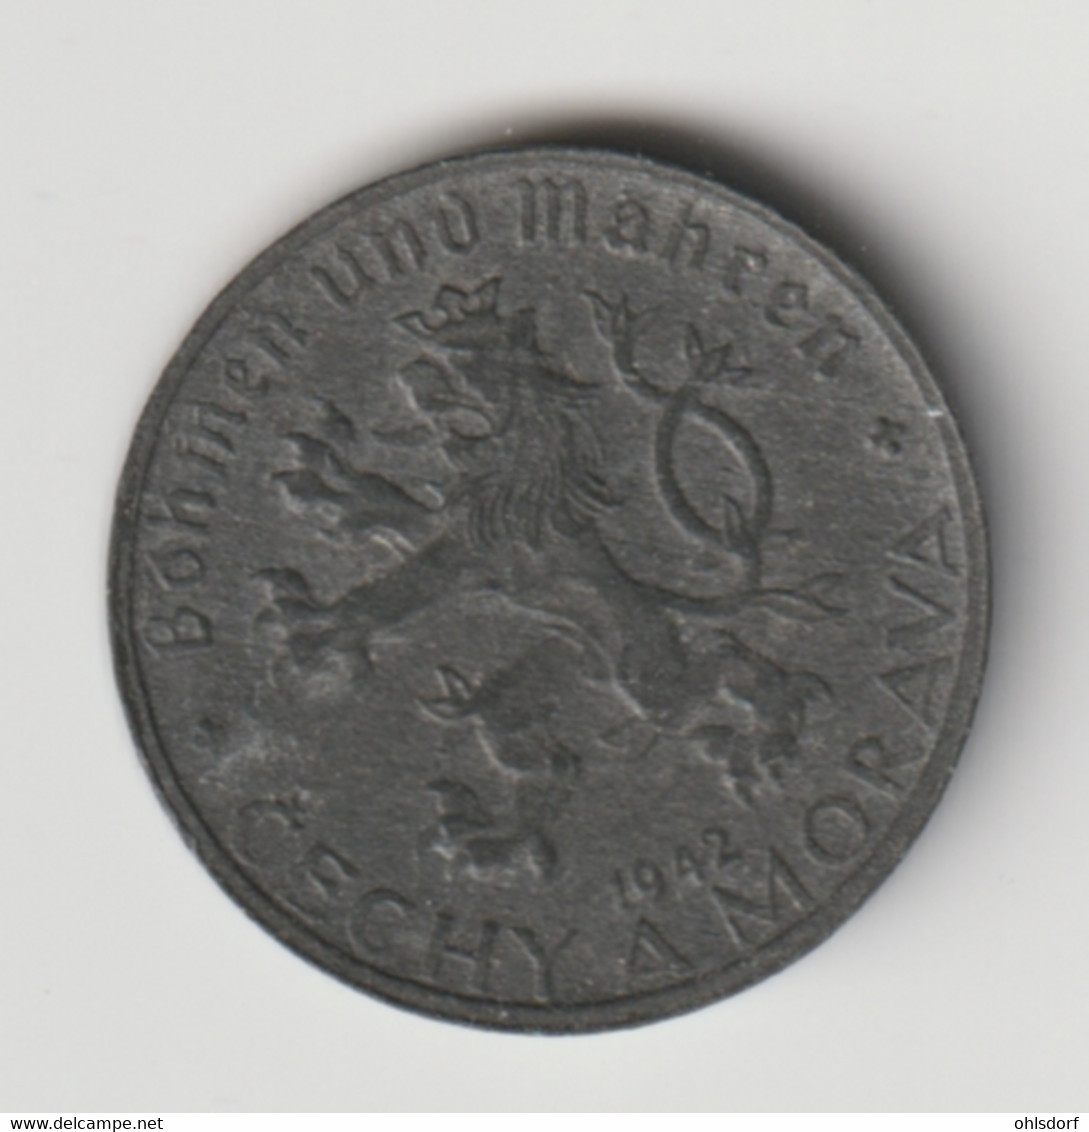 BÖHMEN UND MÄHREN 1942: 10 Haleru, KM 1 - Military Coin Minting - WWII